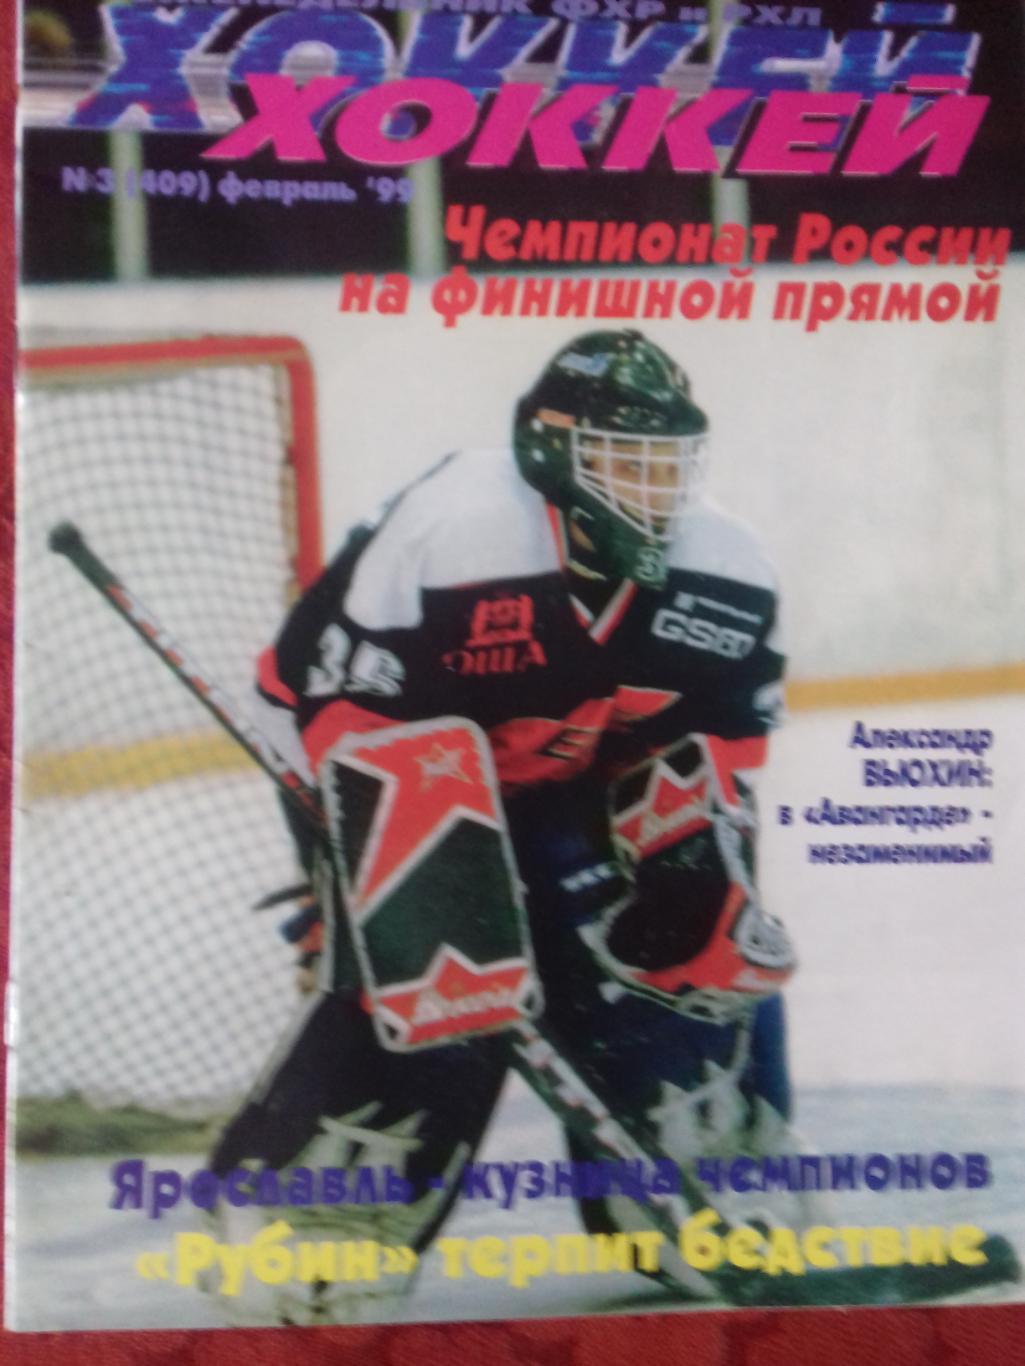 Еженедельник Хоккей №3 1999г.